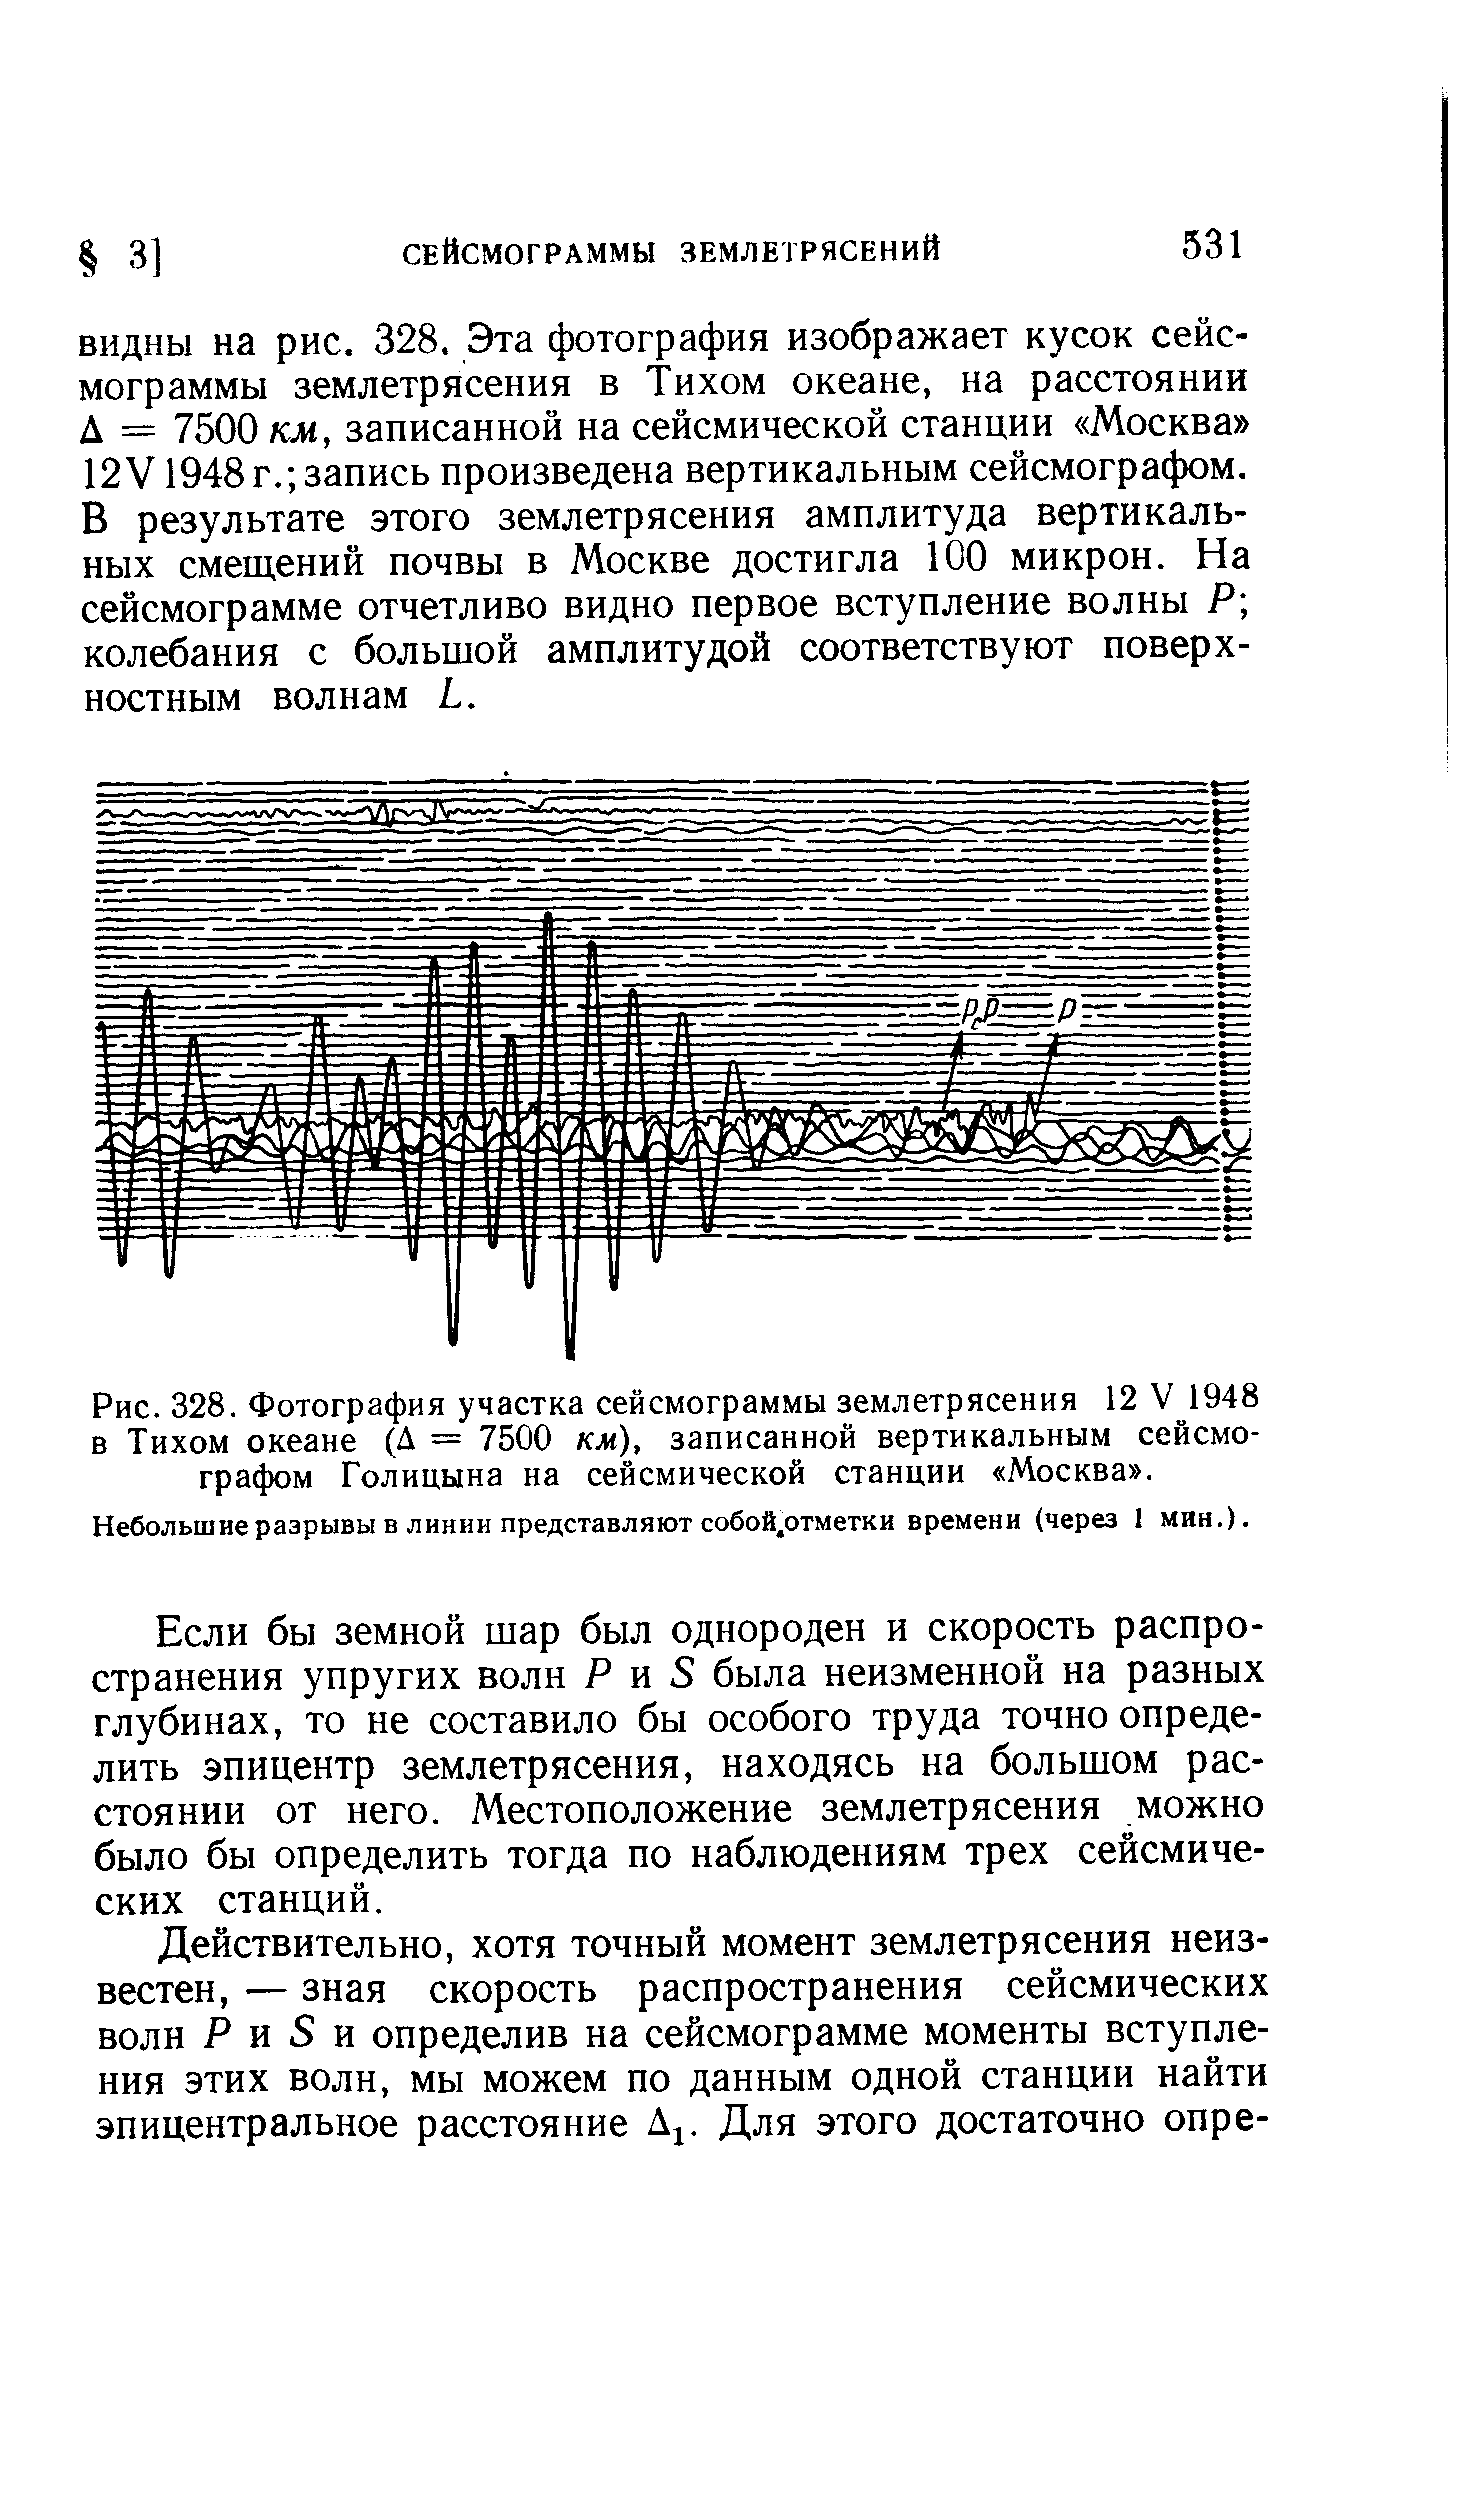 Рис. 328. Фотография участка сейсмограммы землетрясения 12 V 1948 в Тихом океане (Д = 7500 км), записанной вертикальным сейсмографом Голицына на сейсмической станции Москва .
